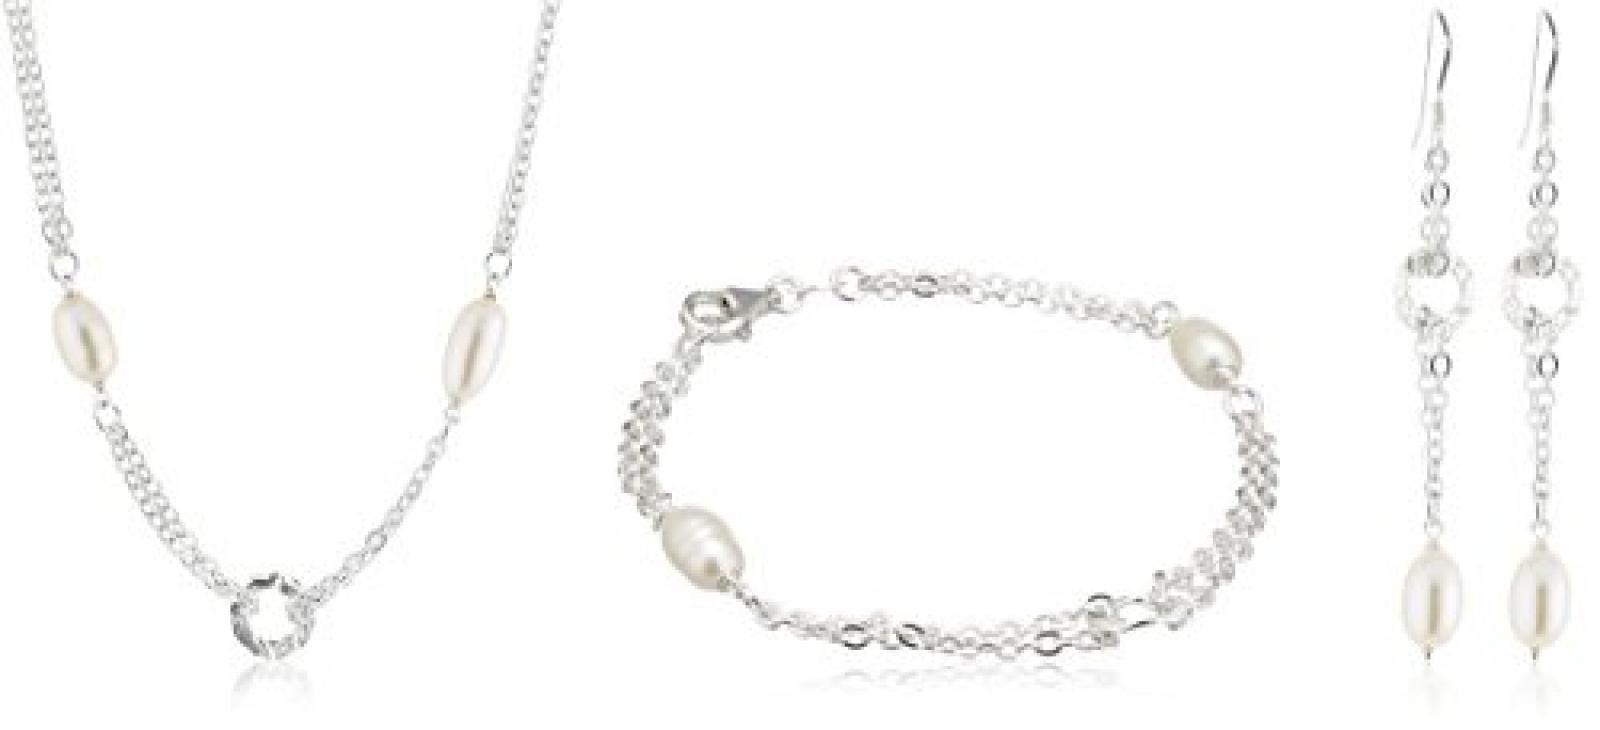 ZEEme Pearls 3 teiliges Set bestehend aus einem 41cm langem Collier und einem 19cm langem Armband und dazu passenden Ohrhaken 301200011 